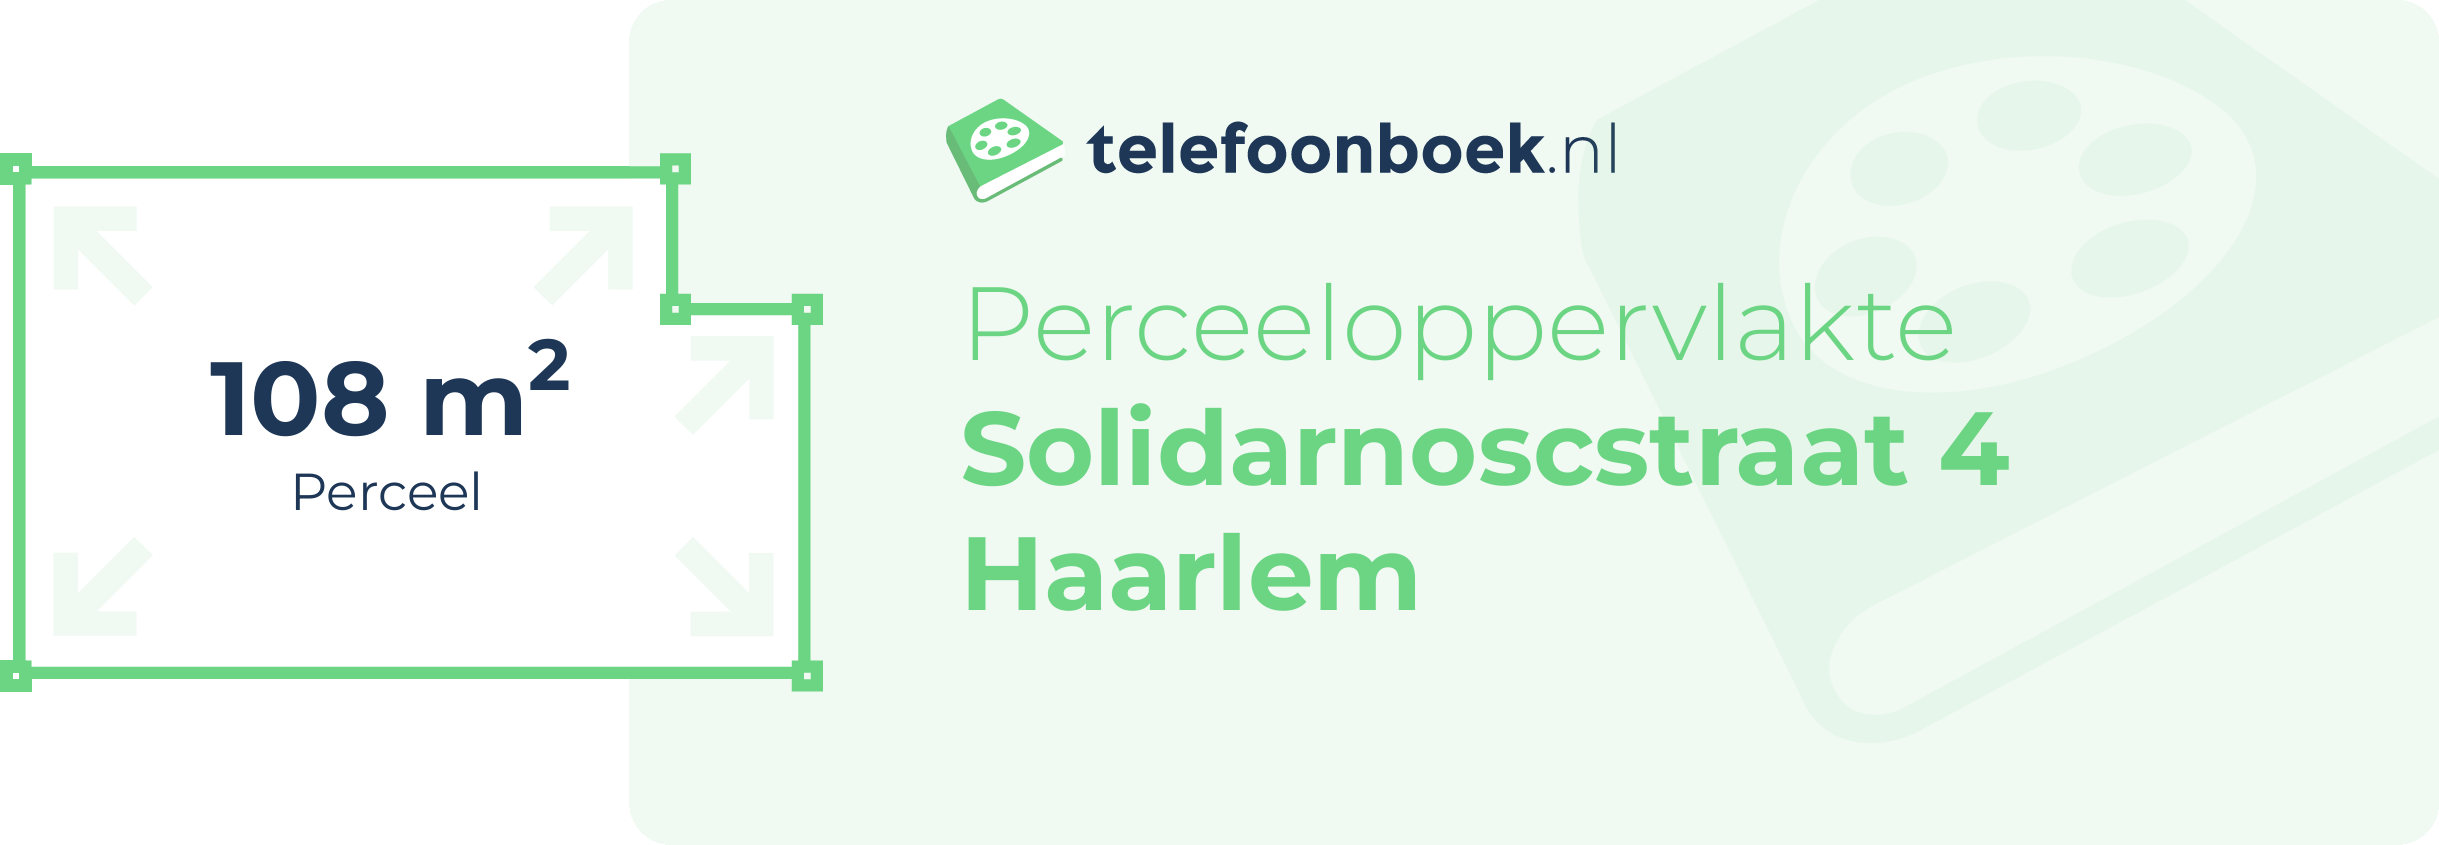 Perceeloppervlakte Solidarnoscstraat 4 Haarlem